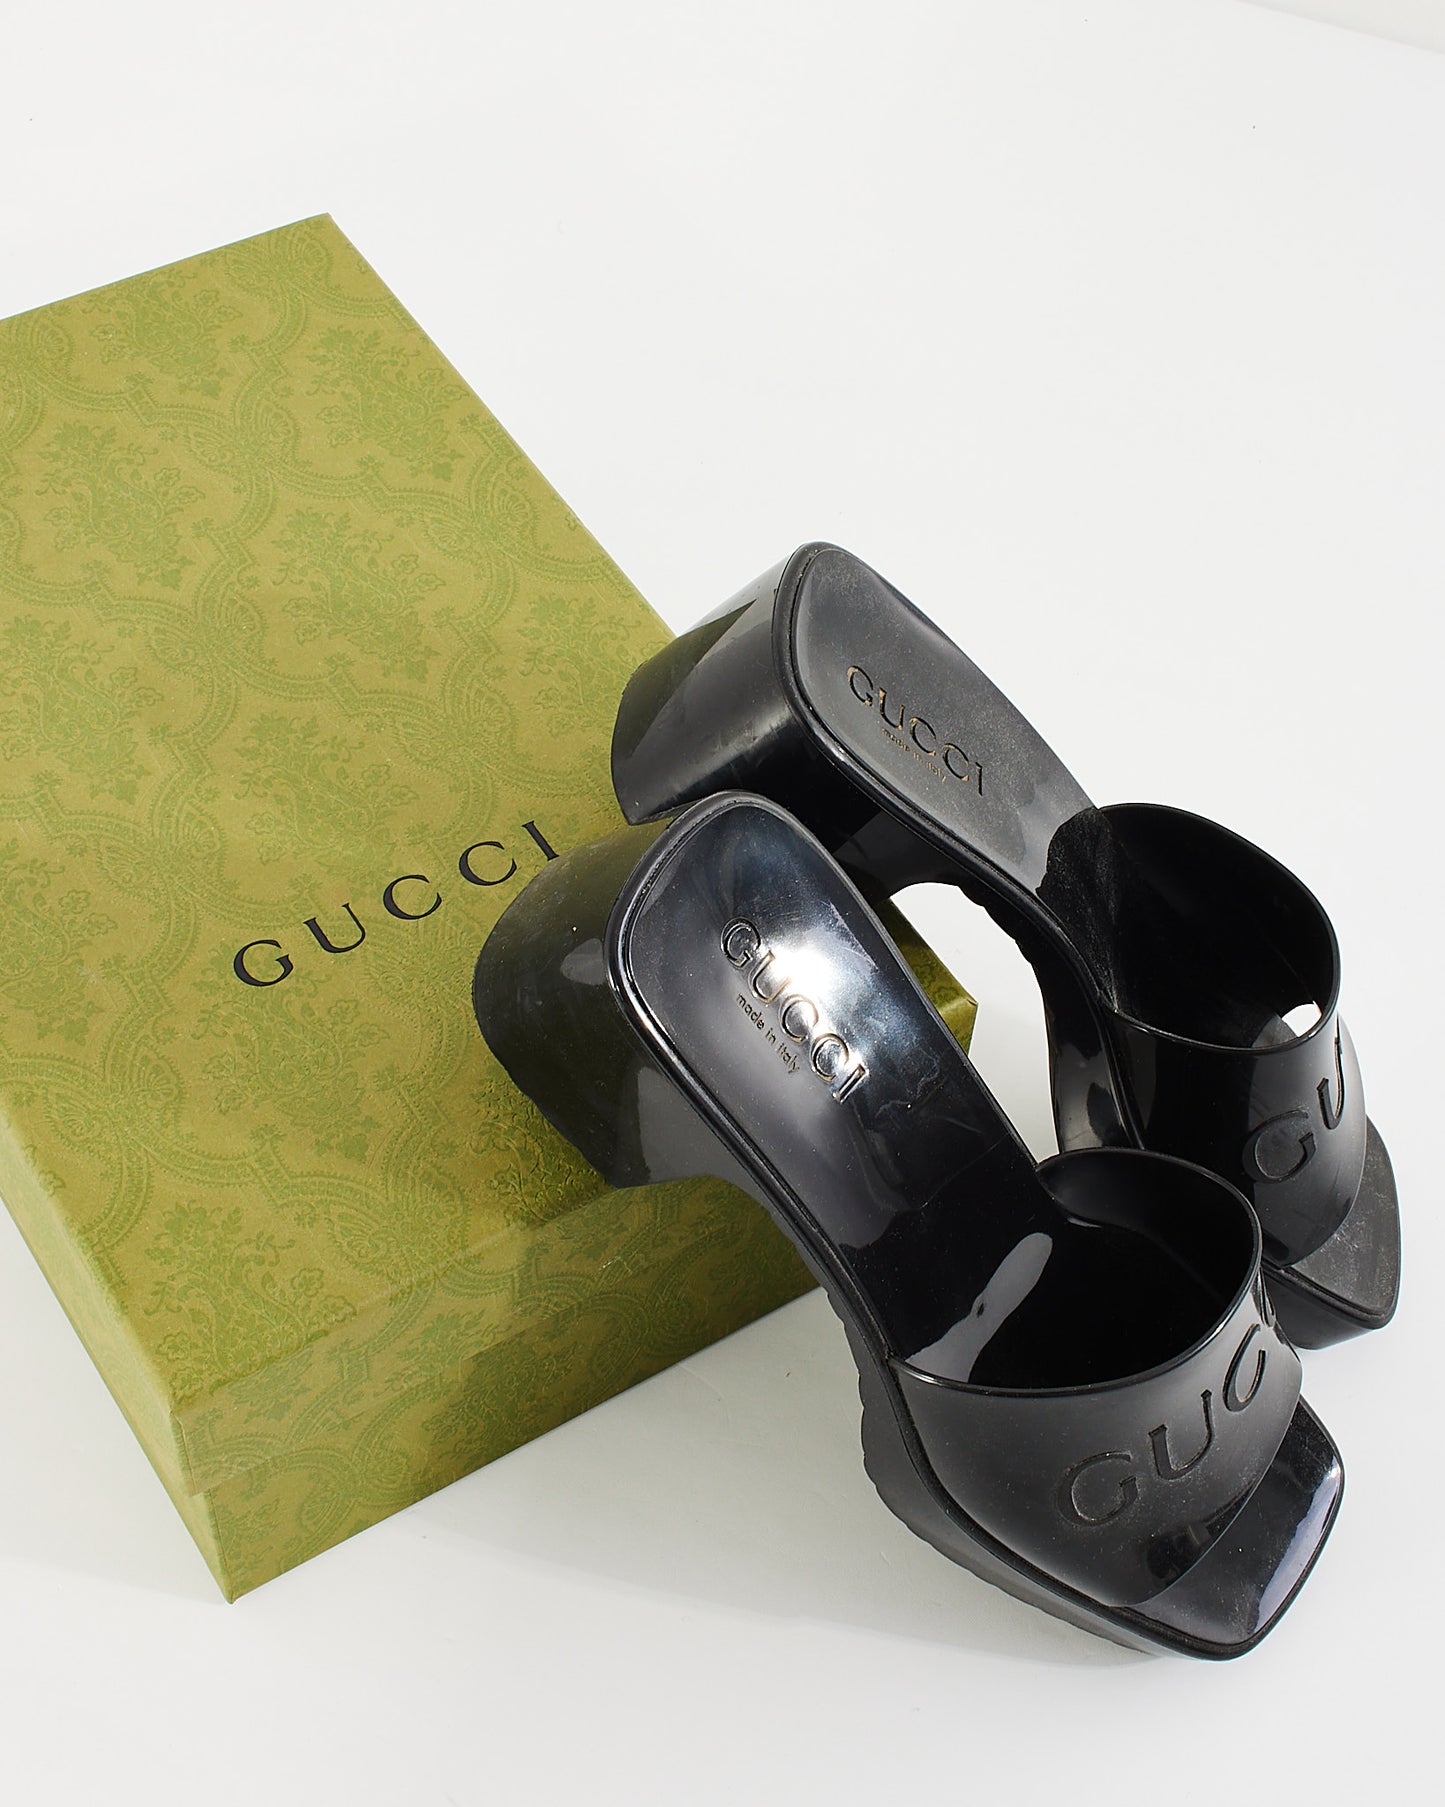 Sandales à plateforme en caoutchouc noir Gucci - 37